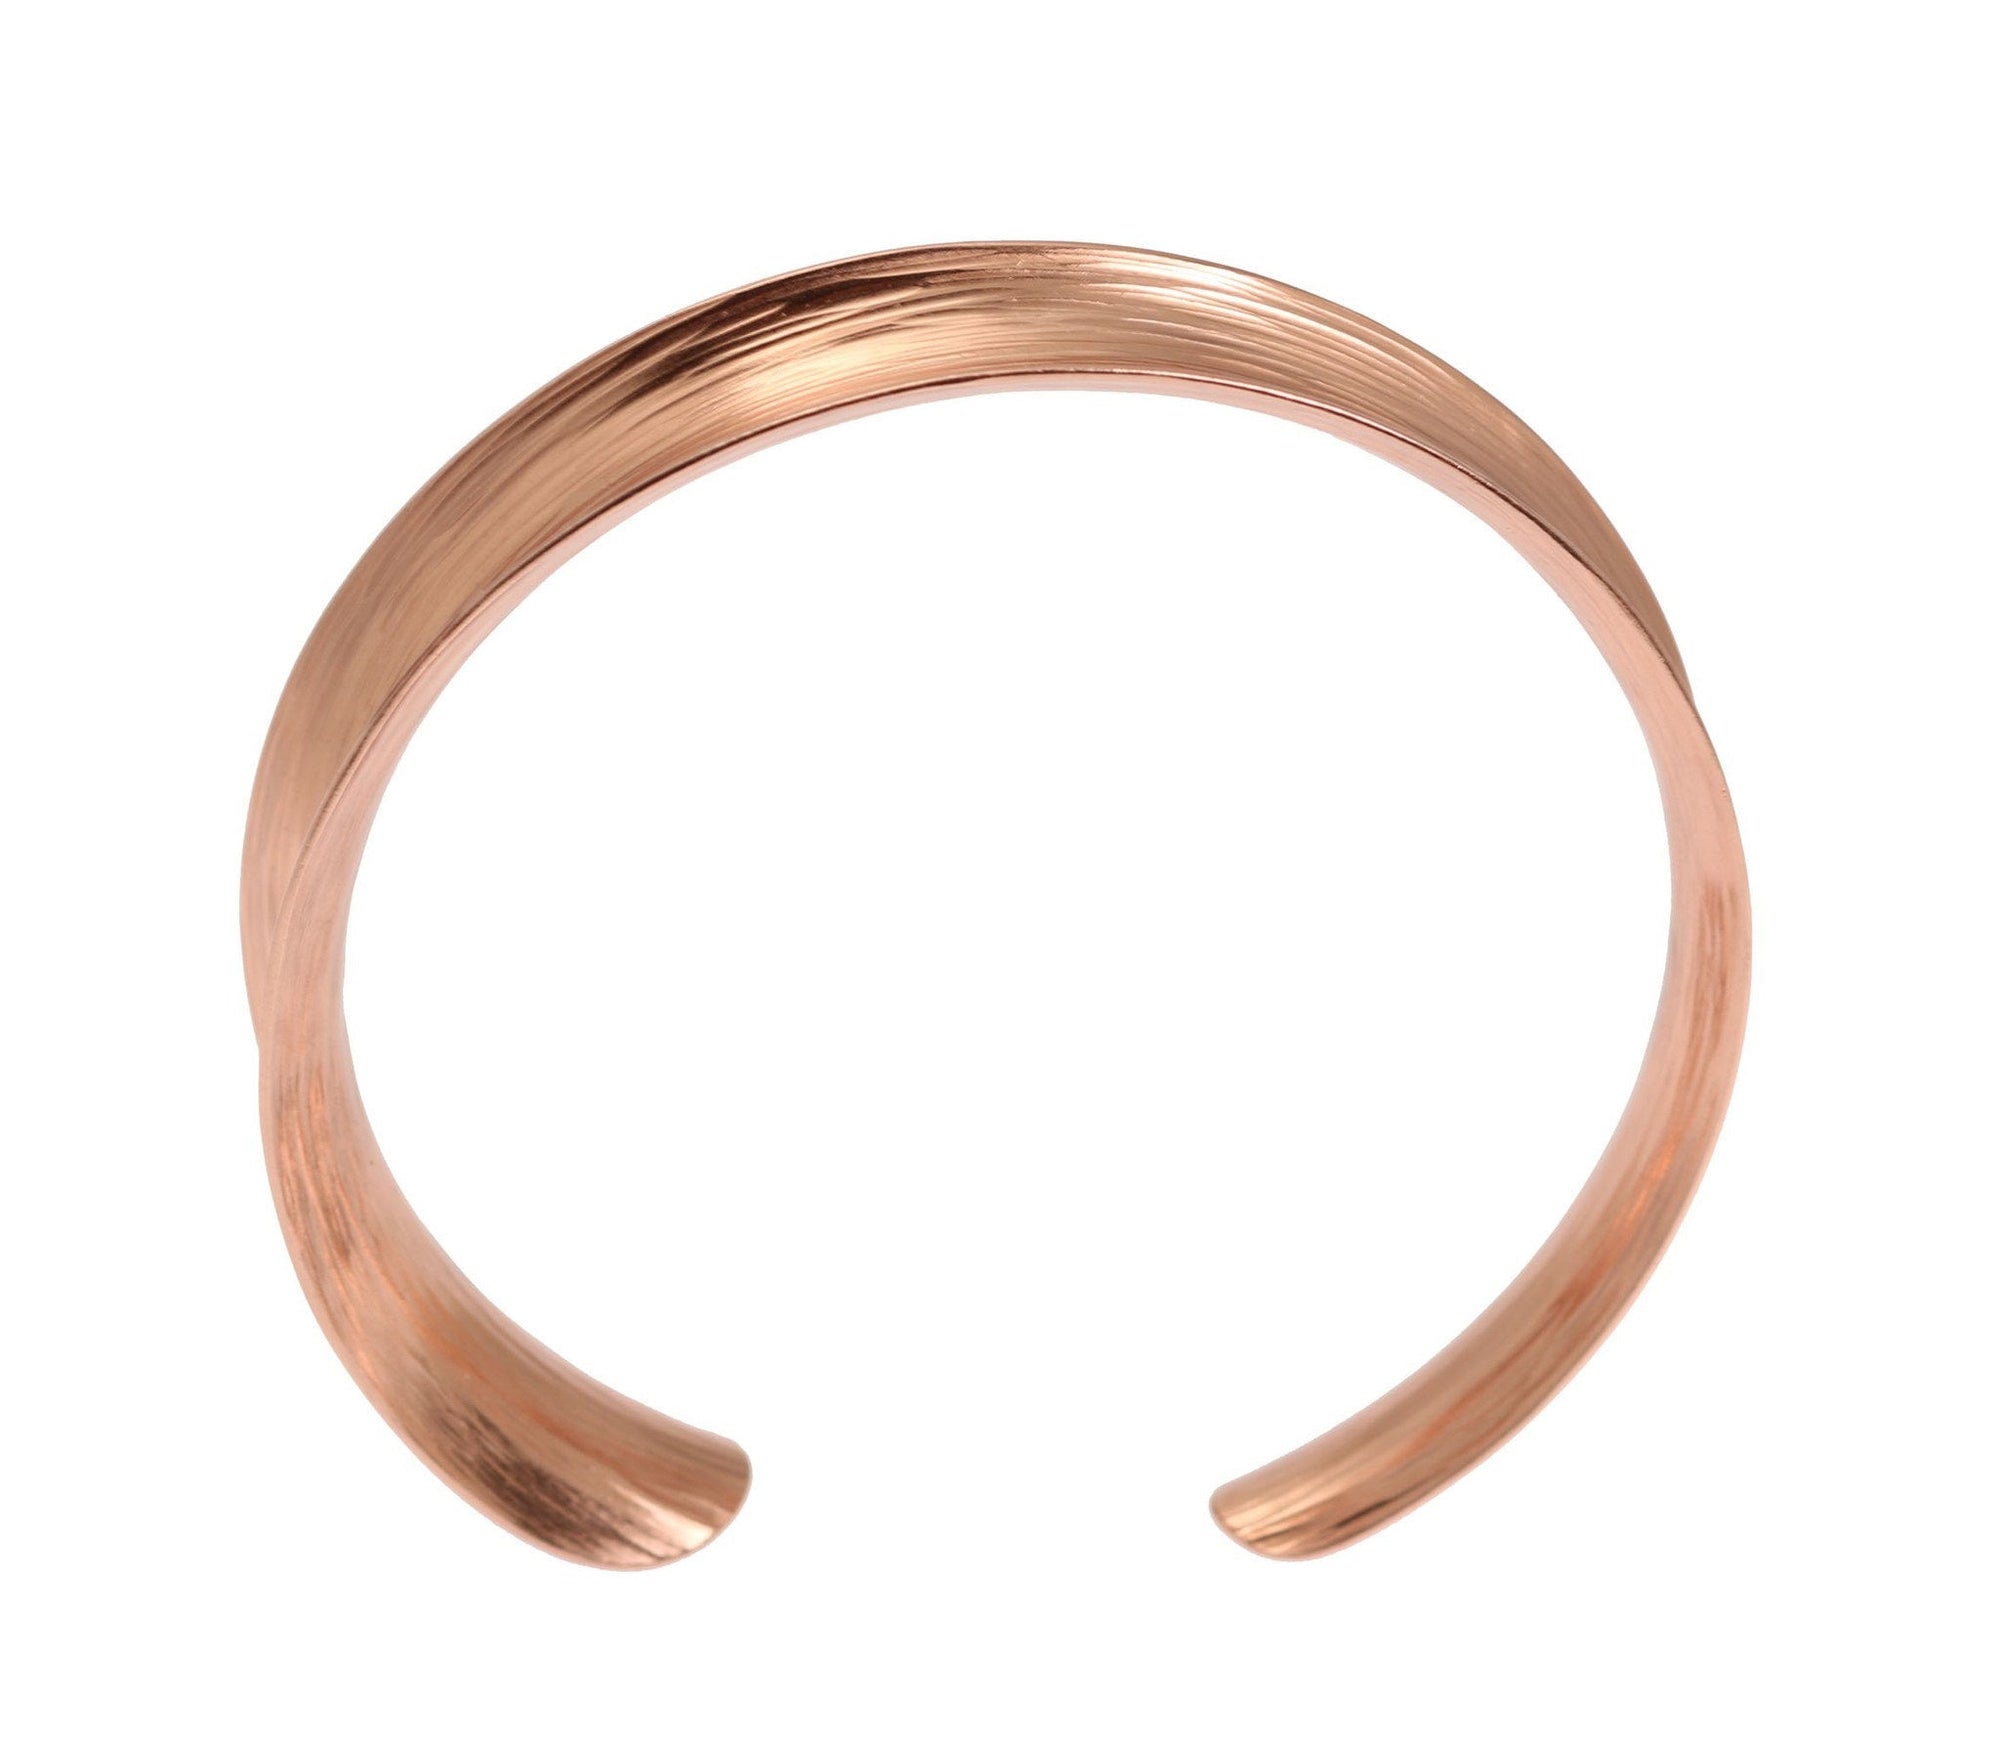 Shape of Anticlastic Bark Copper Bangle Bracelet